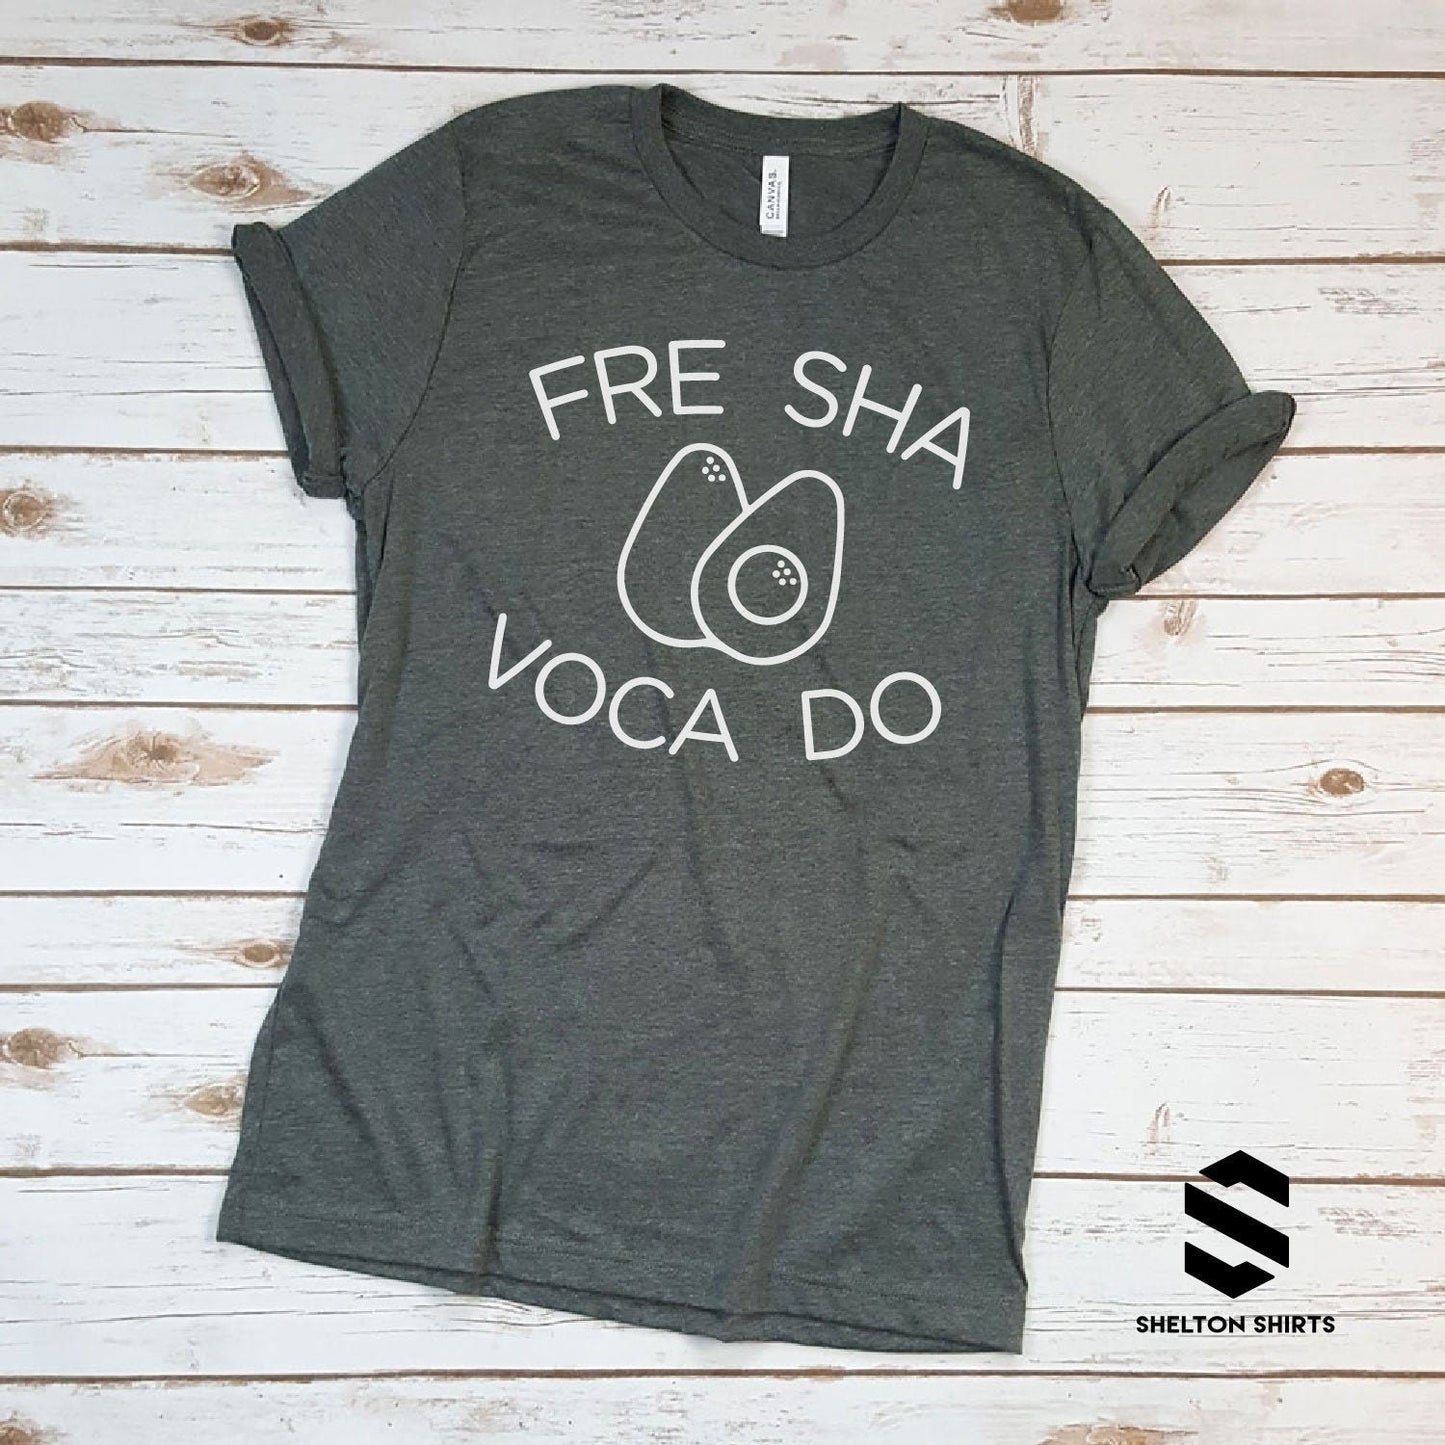 Fre Sha Voca Do on Super Soft Heather Grey Cotton Comfy T-Shirt